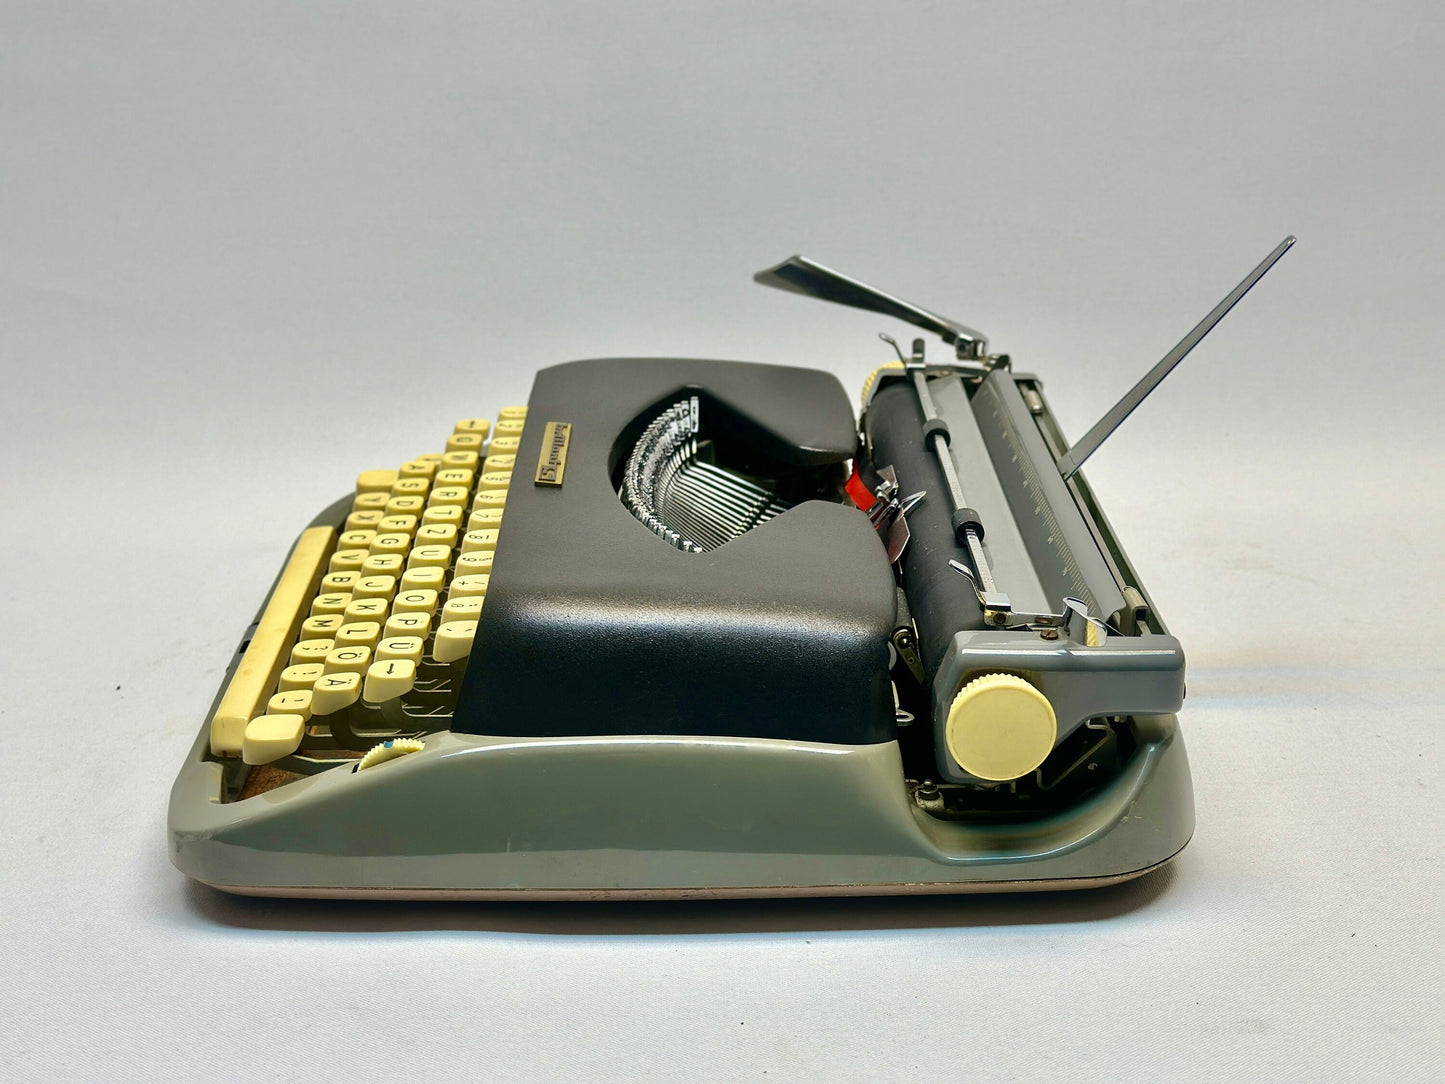 Brillant S Model Typewriter - Vintage 1950 Edition with QWERTZ Keyboard - Black Typewriter - - Antique Typewriter